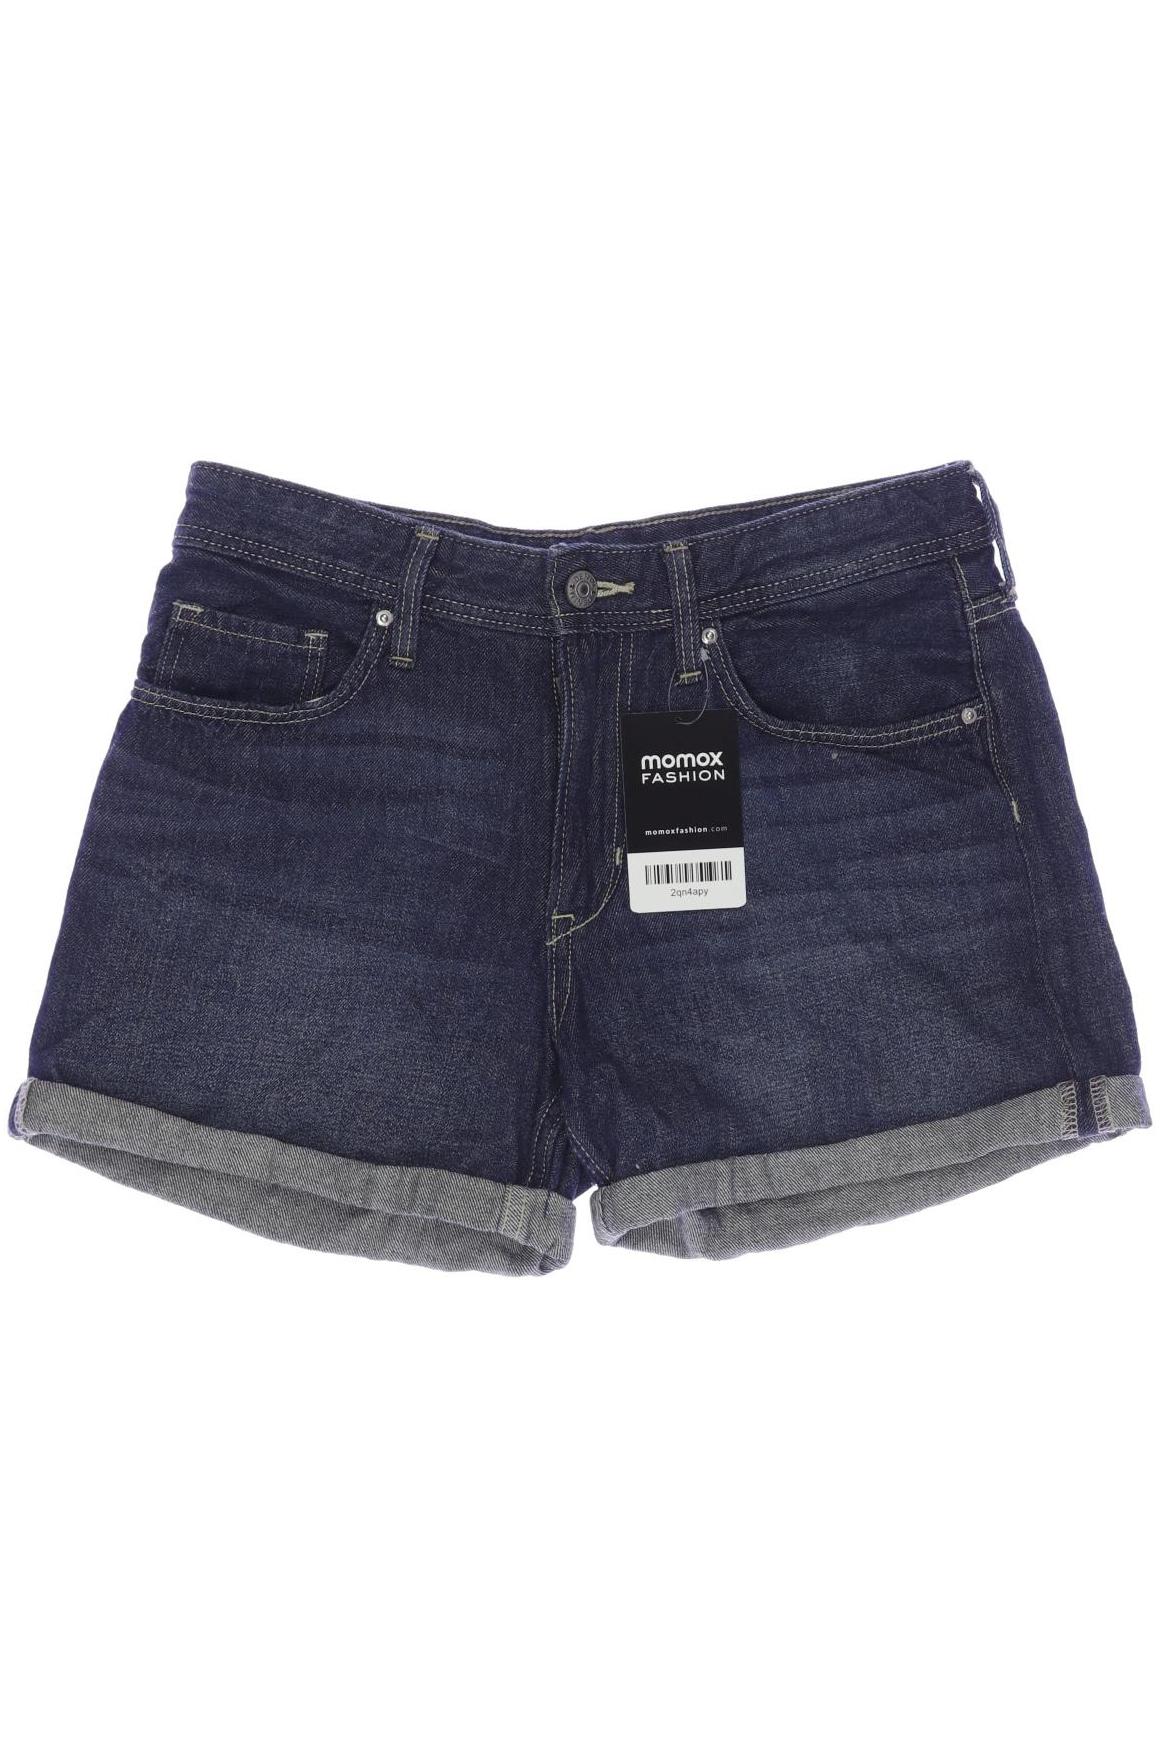 H&M Damen Shorts, blau, Gr. 164 von H&M